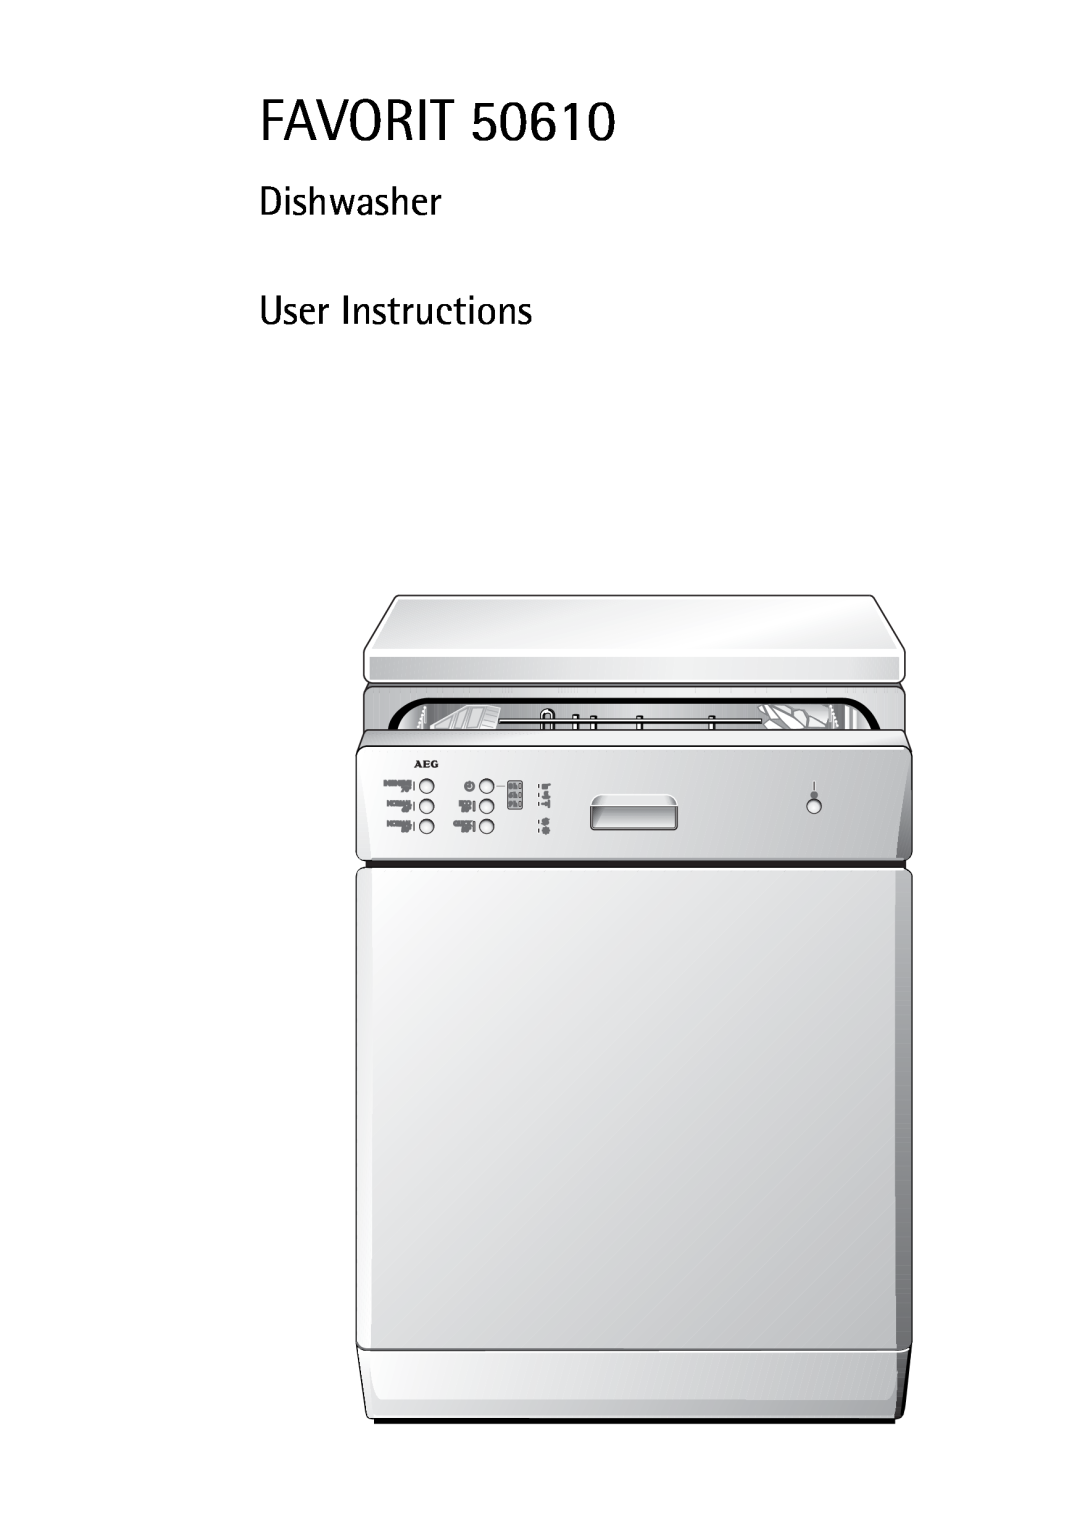 Electrolux 50610 manual Favorit, Dishwasher User Instructions 